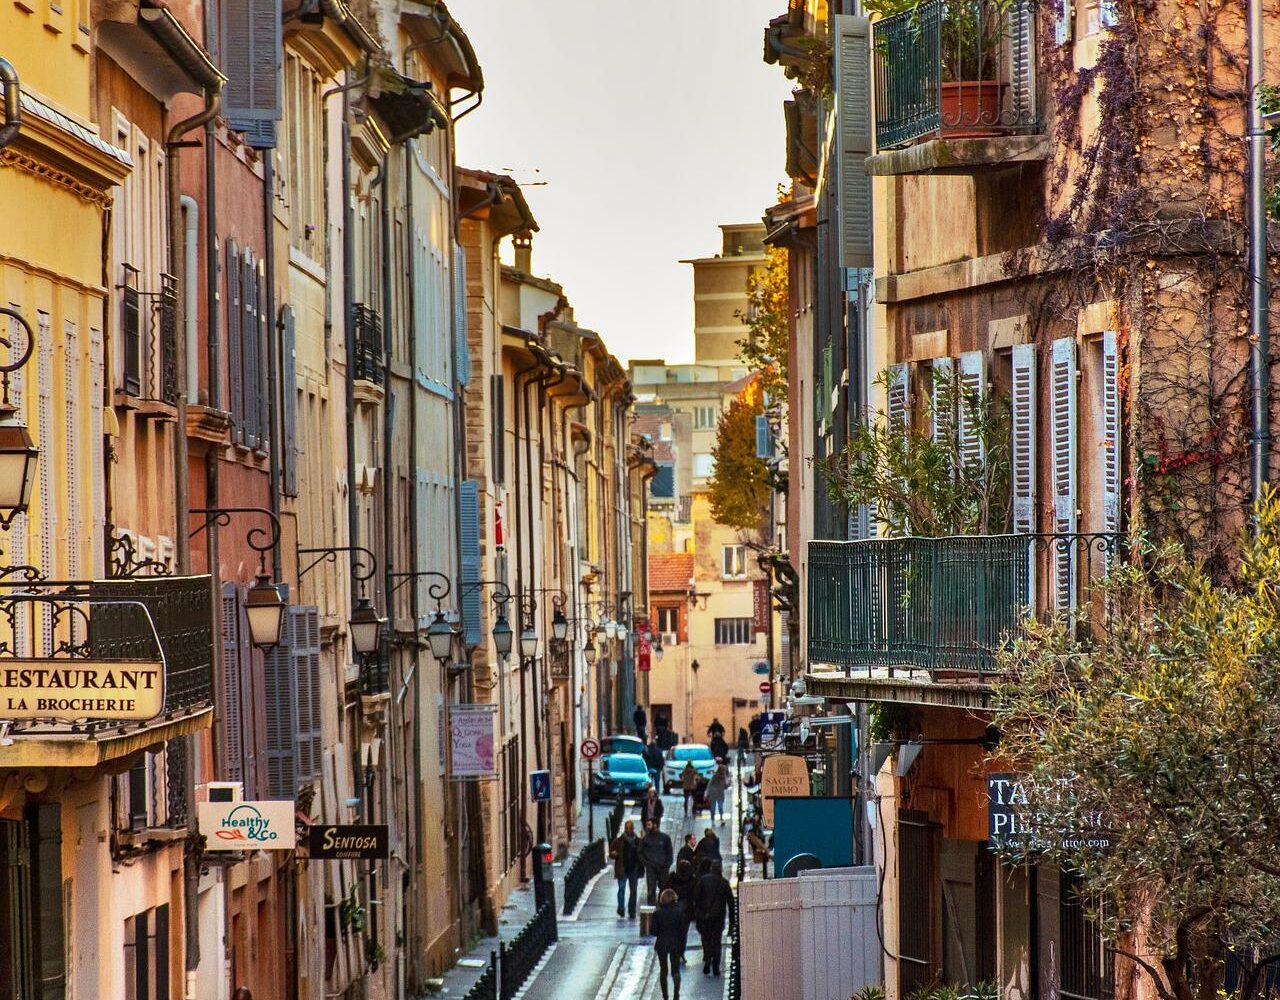 Vue d'une rue à Aix en Provence | Gentle provence